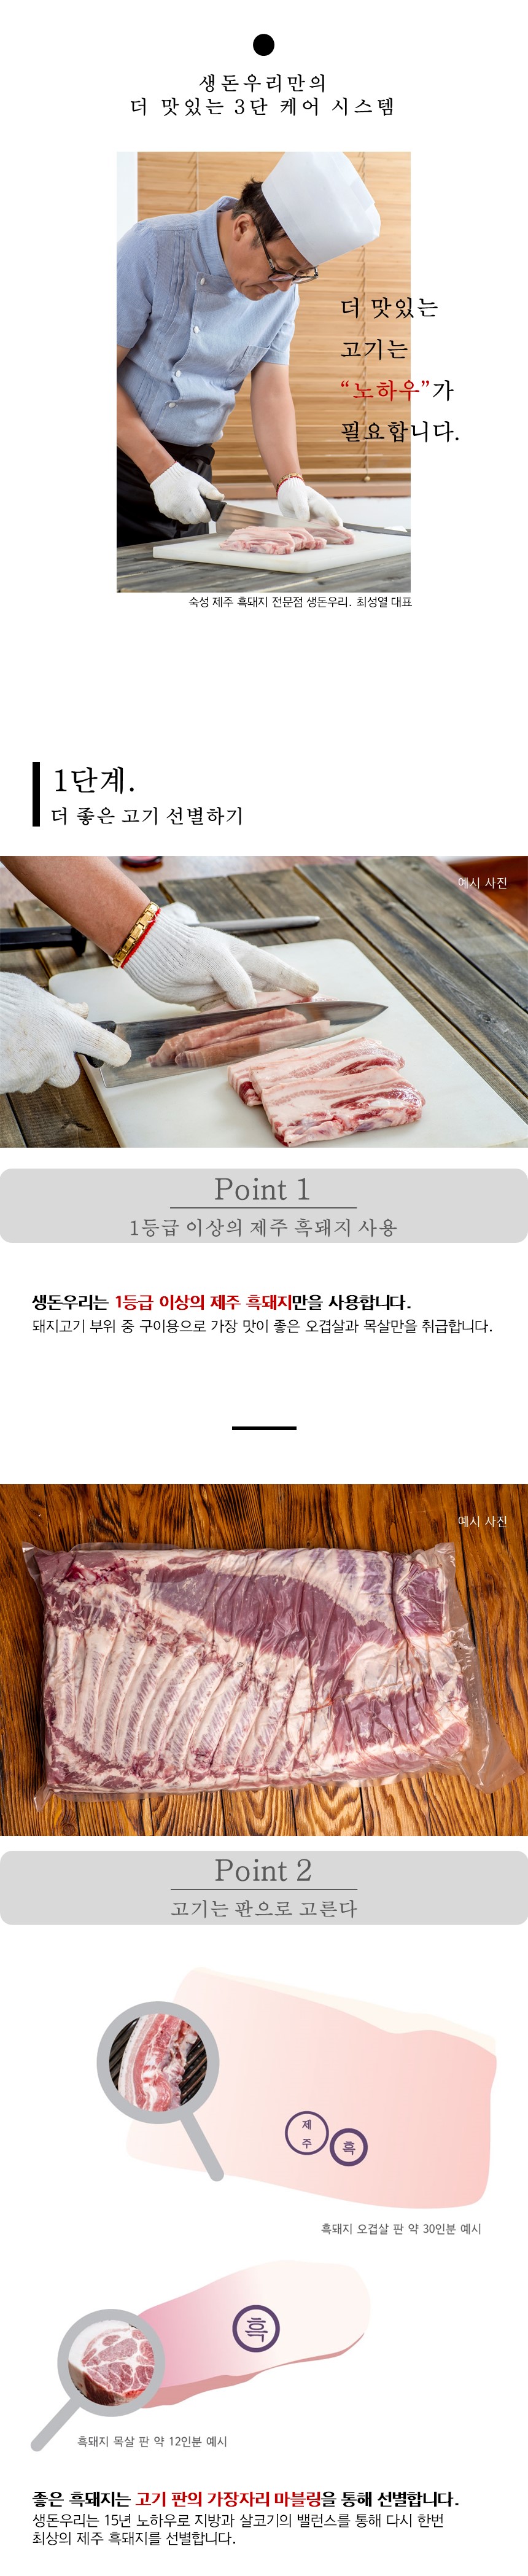 [냉장]30시간 숙성 제주 흑돼지 앞다리살 1kg